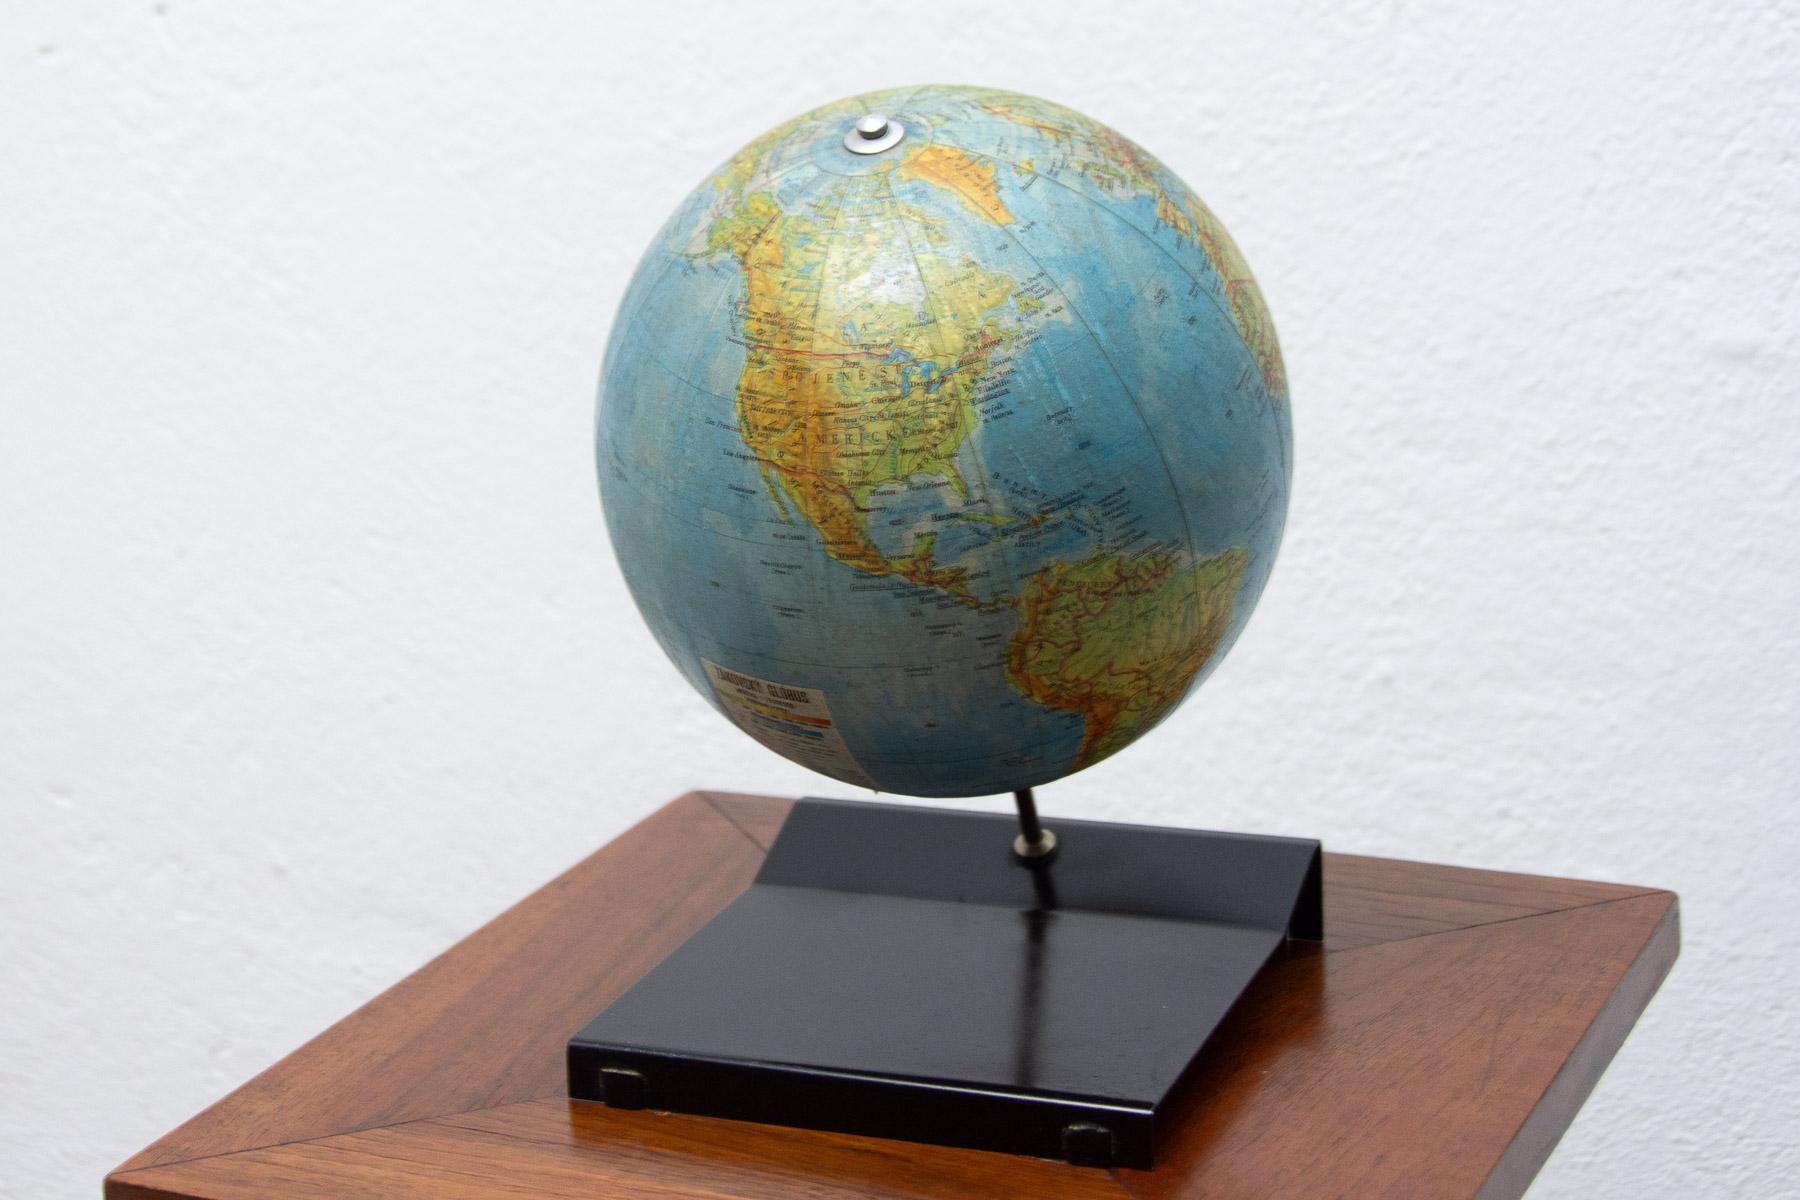 Dieser Vintage-Terrestrial-Globus wurde in den 1970er Jahren in der ehemaligen Tschechoslowakei für den Schulbedarf hergestellt.

Es besteht aus Plastik, Holz und Pappe. Es ist in gutem Vintage-Zustand.

Maße: Durchmesser 17cm.

Höhe: 25 cm.